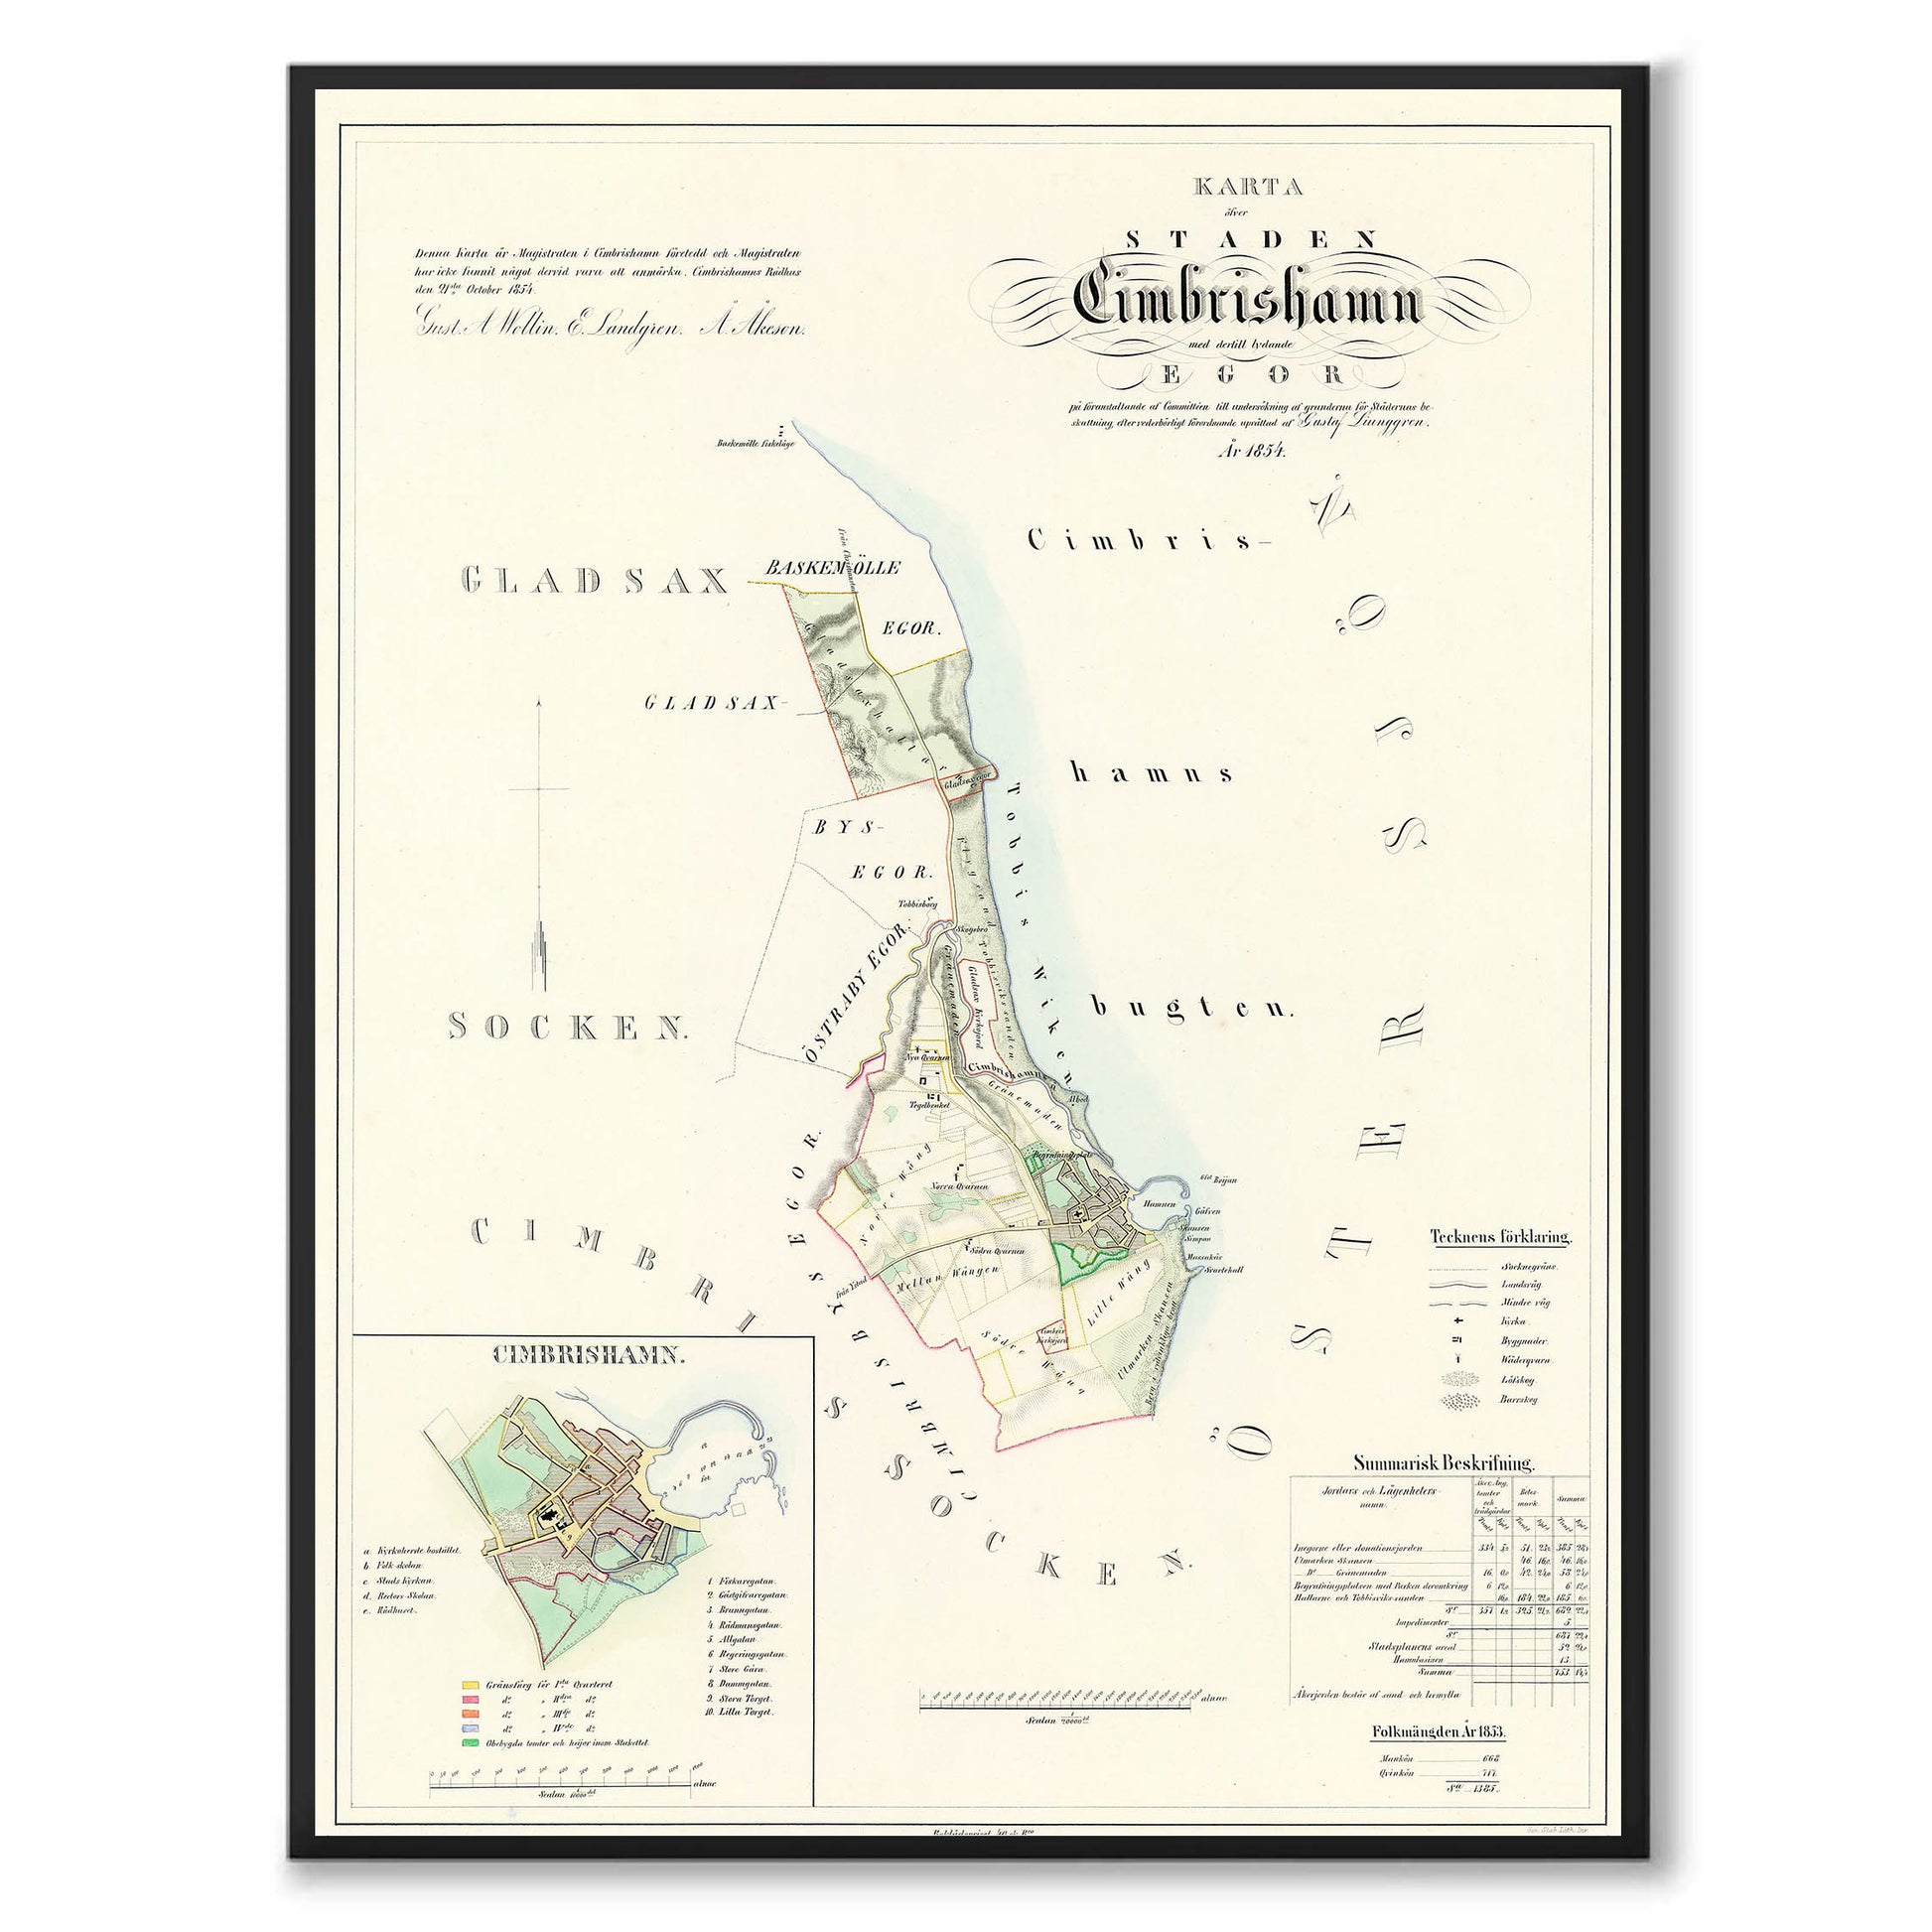 Poster med reproduktion av historisk karta över Simrishamn från Ljunggrens klassiska atlas. 